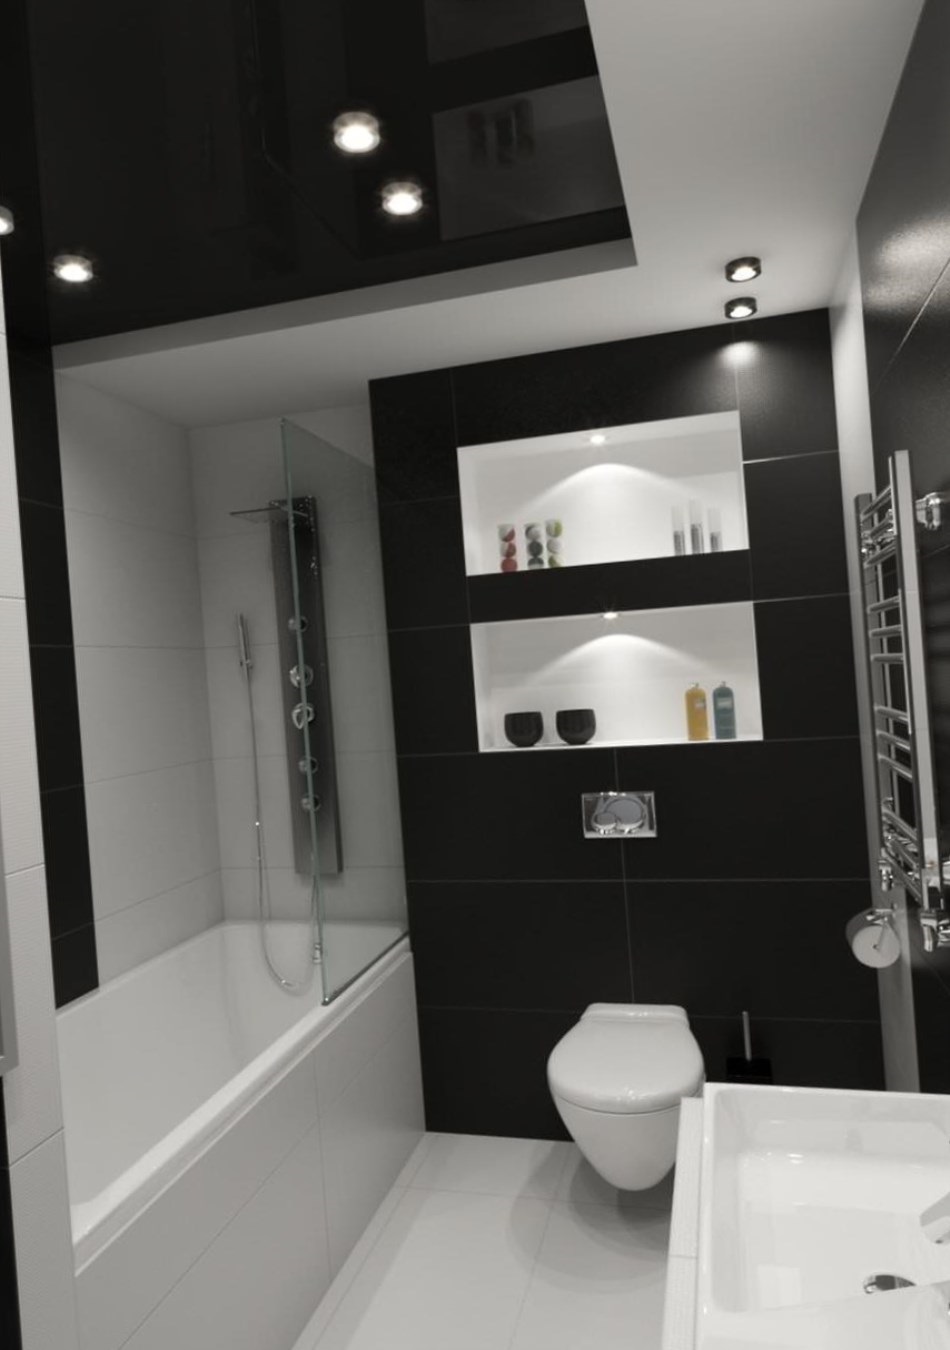 مثال على تصميم الحمام الخفيف من 5 متر مربع